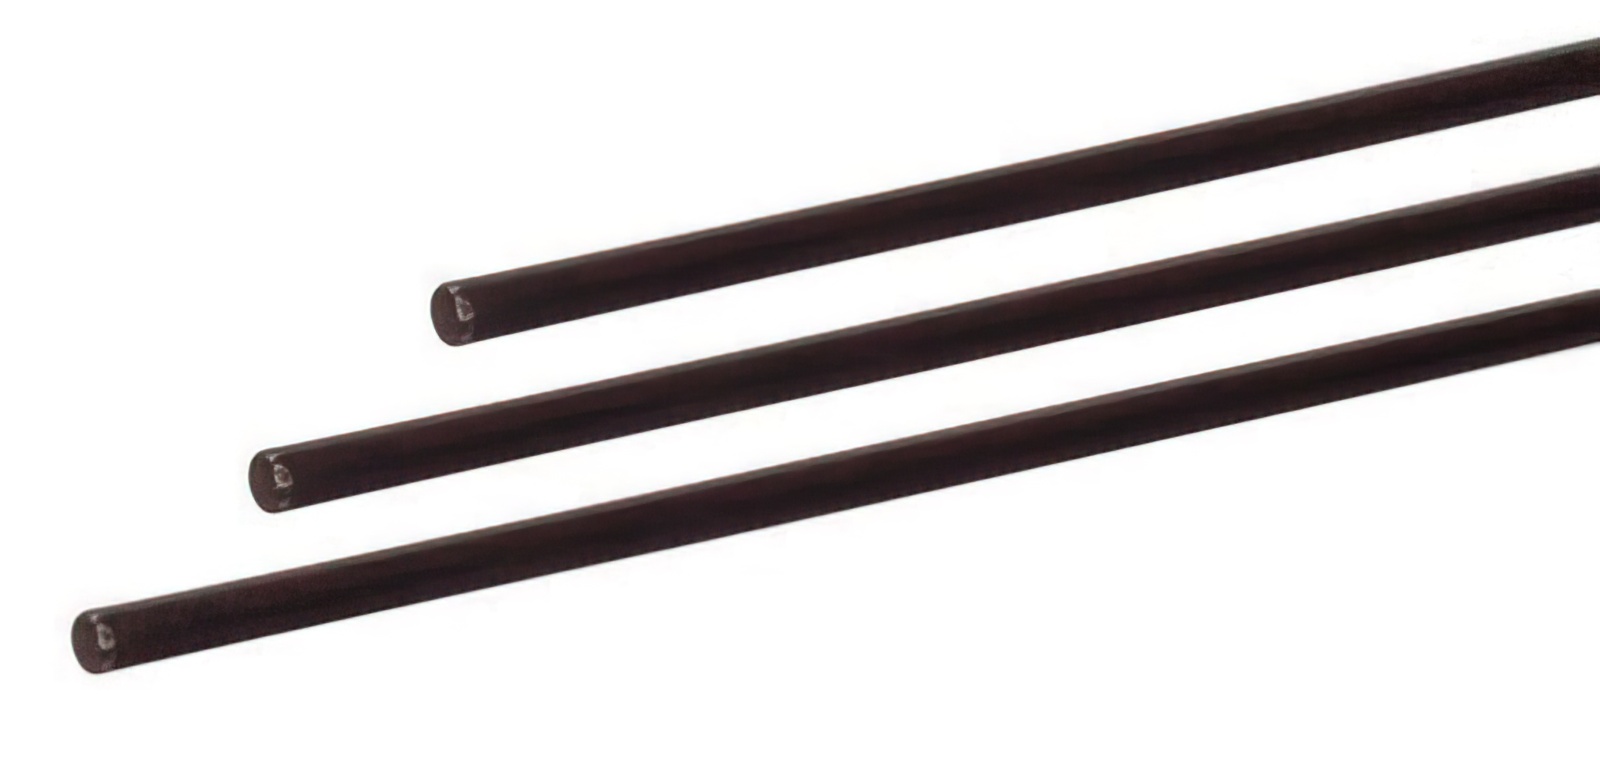 6 Stück - Gfk-Vollstab (Fiberglasstab/Glasfaserstab) 6  mm 175 cm schwarz für Drachen- und Modellbau Basteln Montagen Messebau Industrie Haushalt